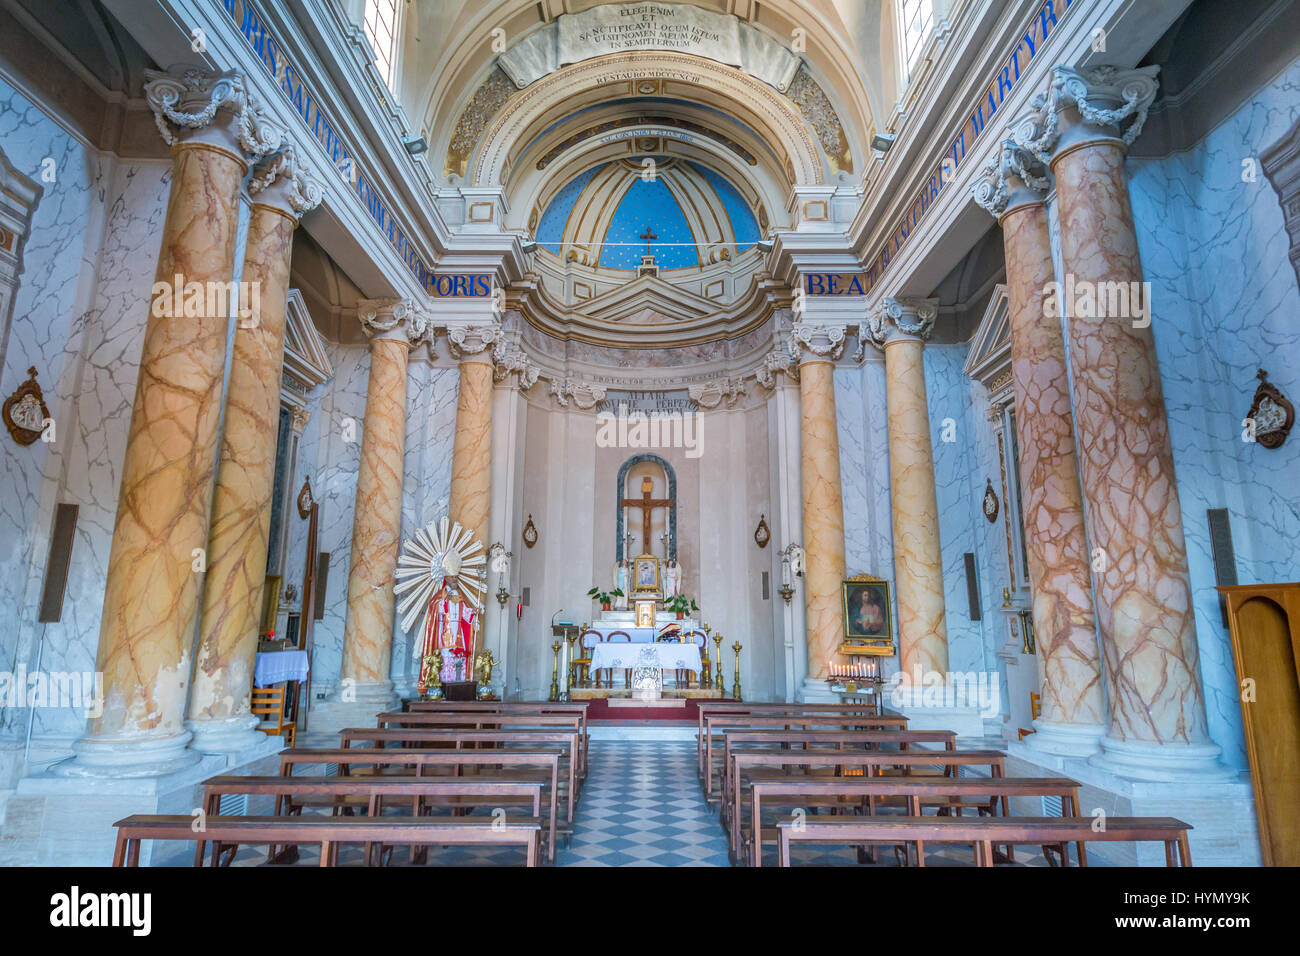 L'église de Saint Biagio, Buckland, Province de Rome, Latium (Italie) Banque D'Images